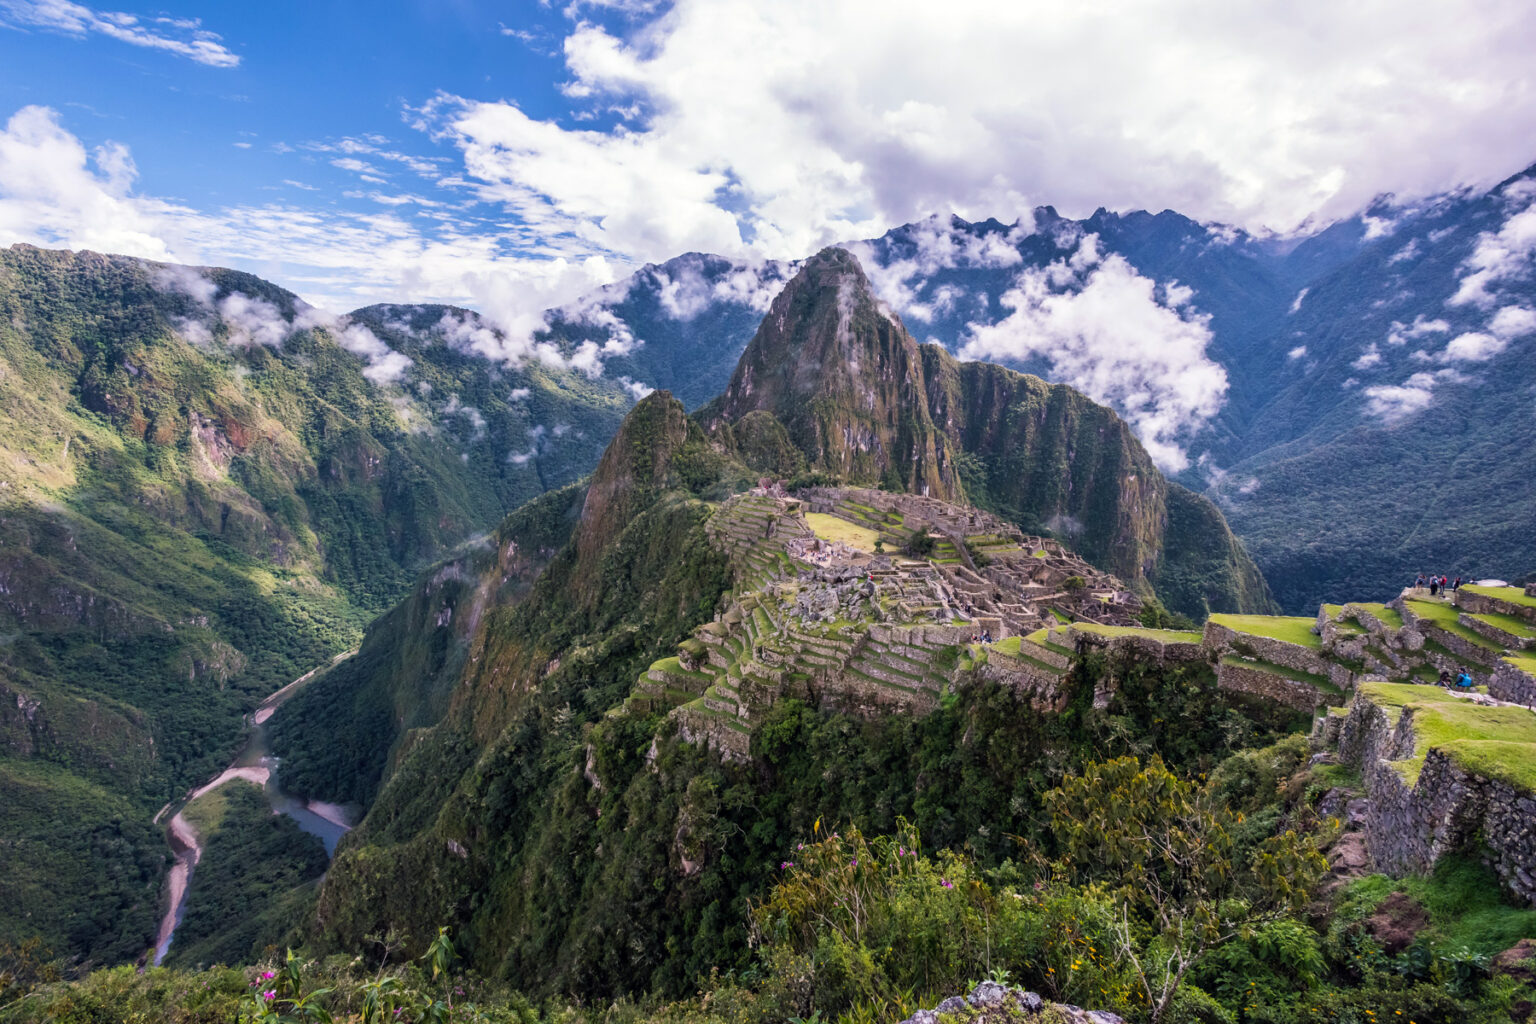 Scenic view of Machu Picchu in Peru